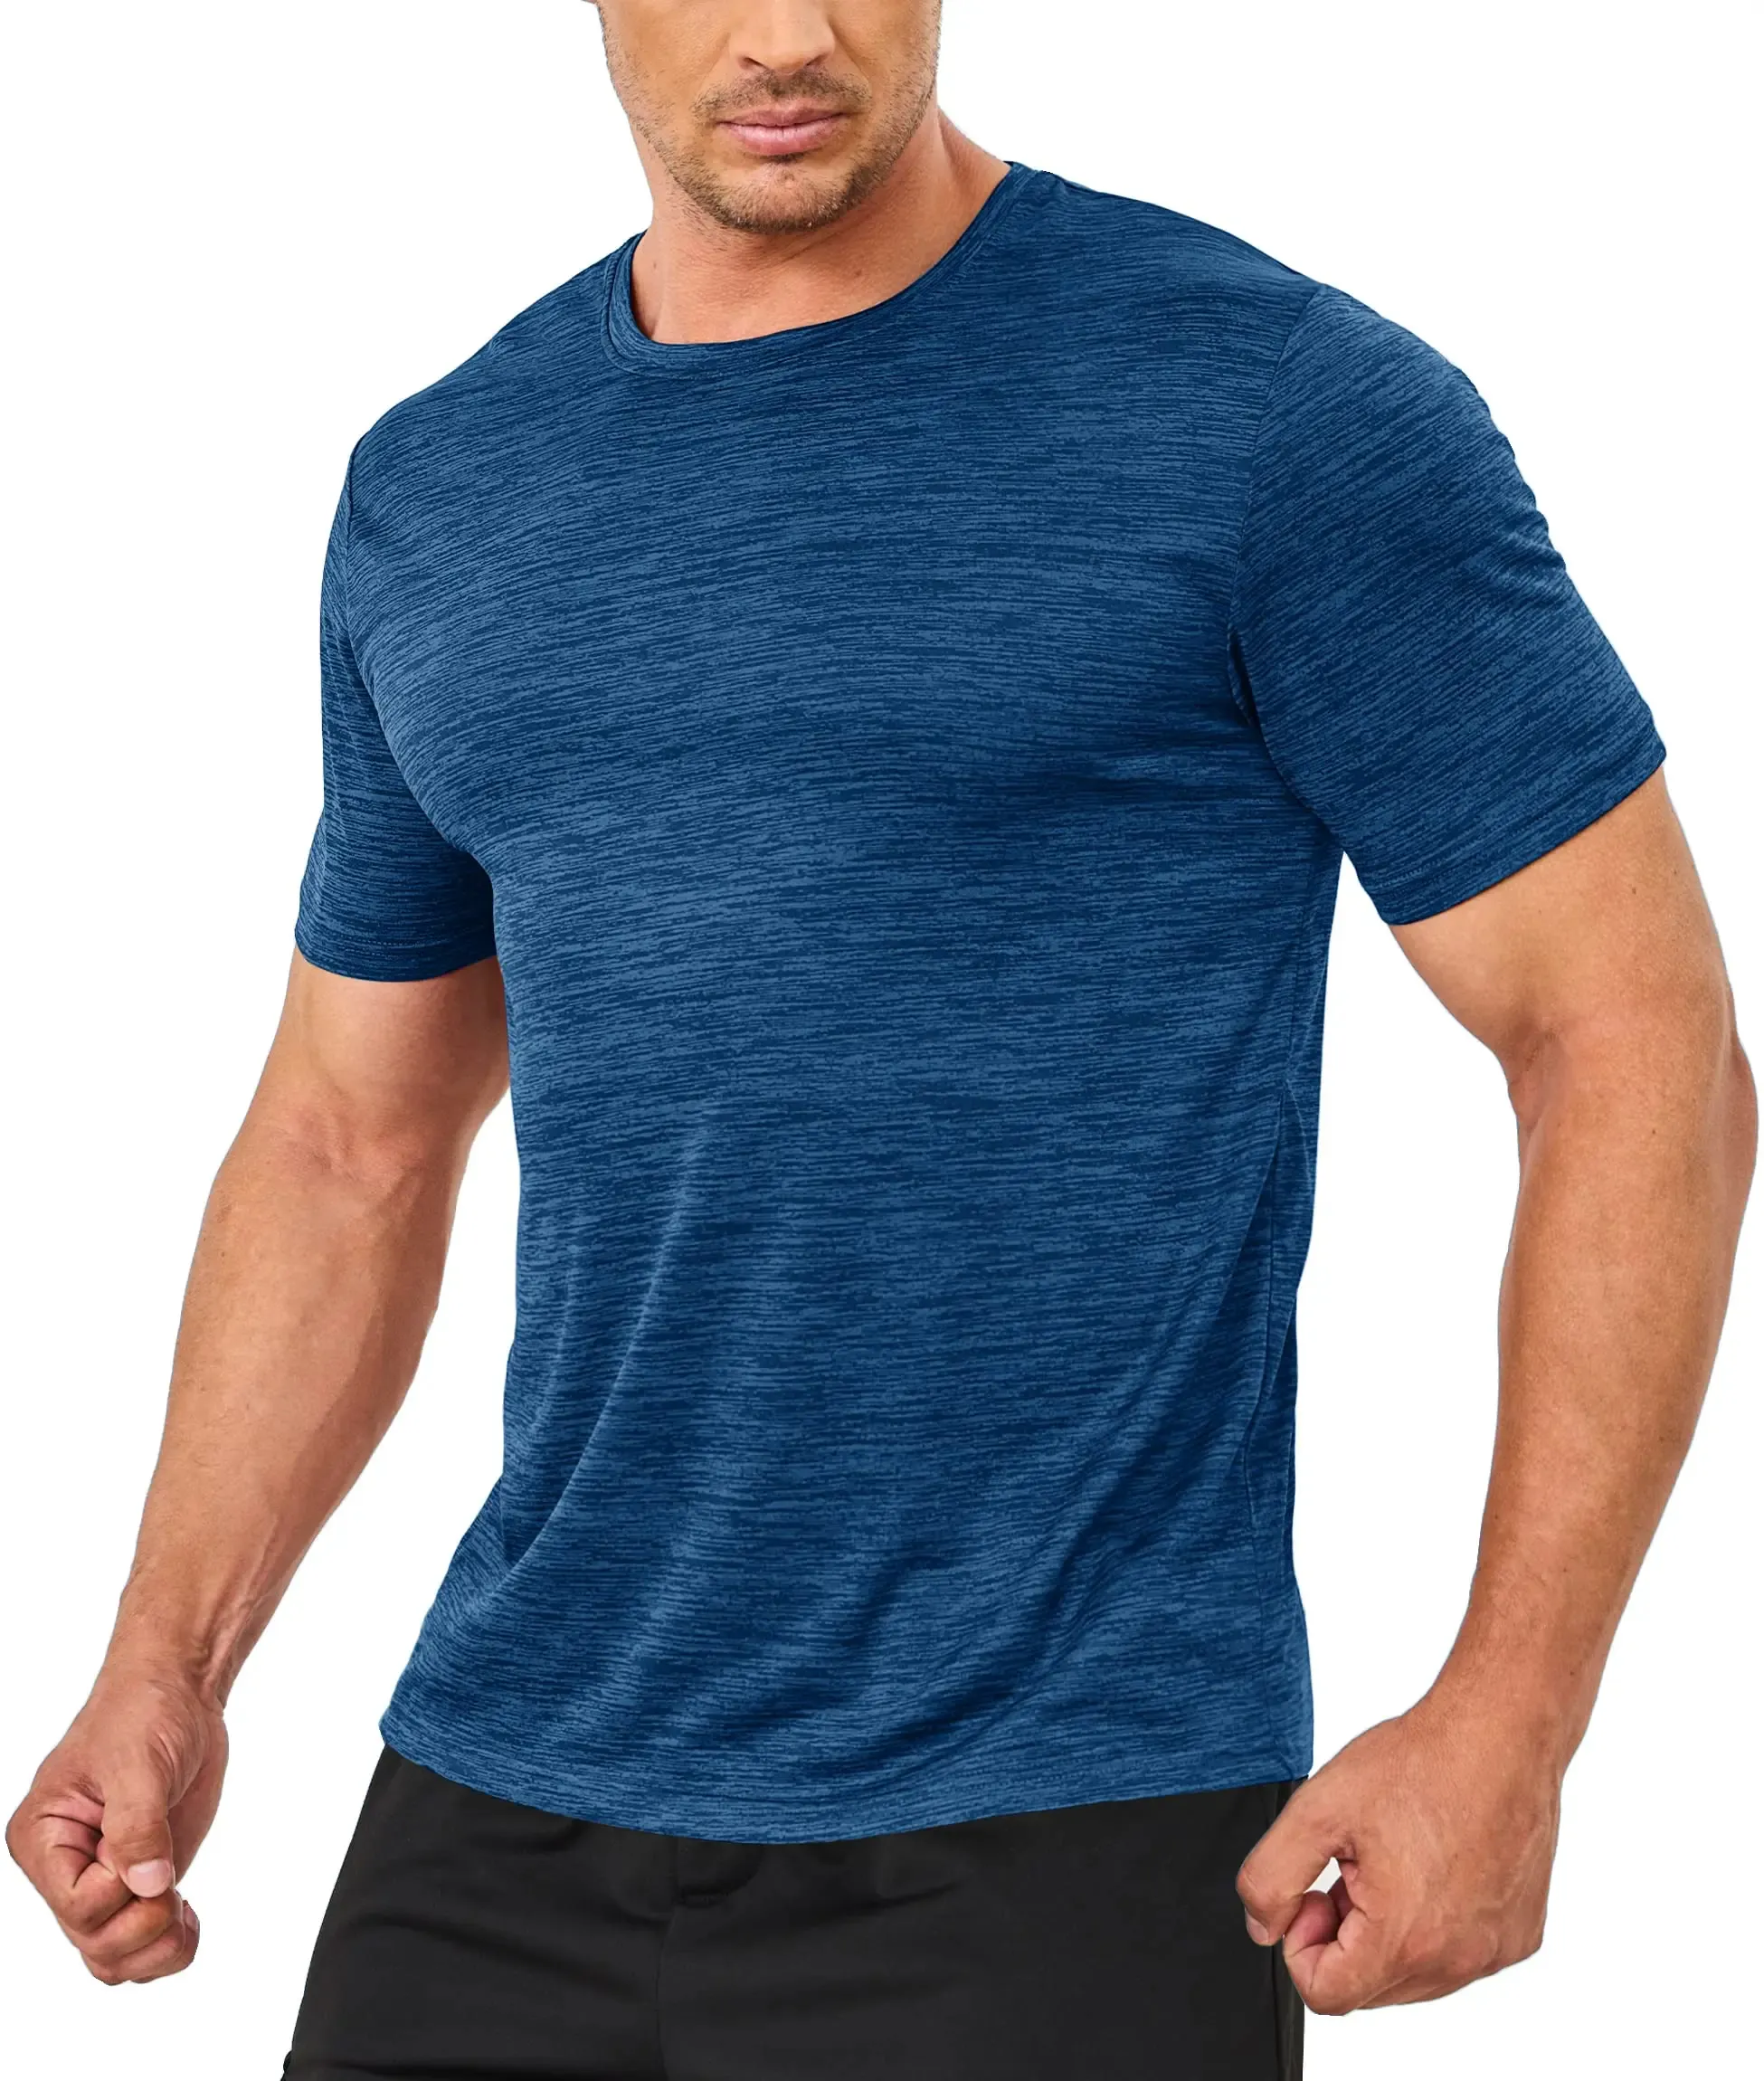 Yaz hızlı kuru erkek t-shirt koşu Tee gömlek kısa kollu atlet elastik egzersiz spor açık rahat T shirt Tops